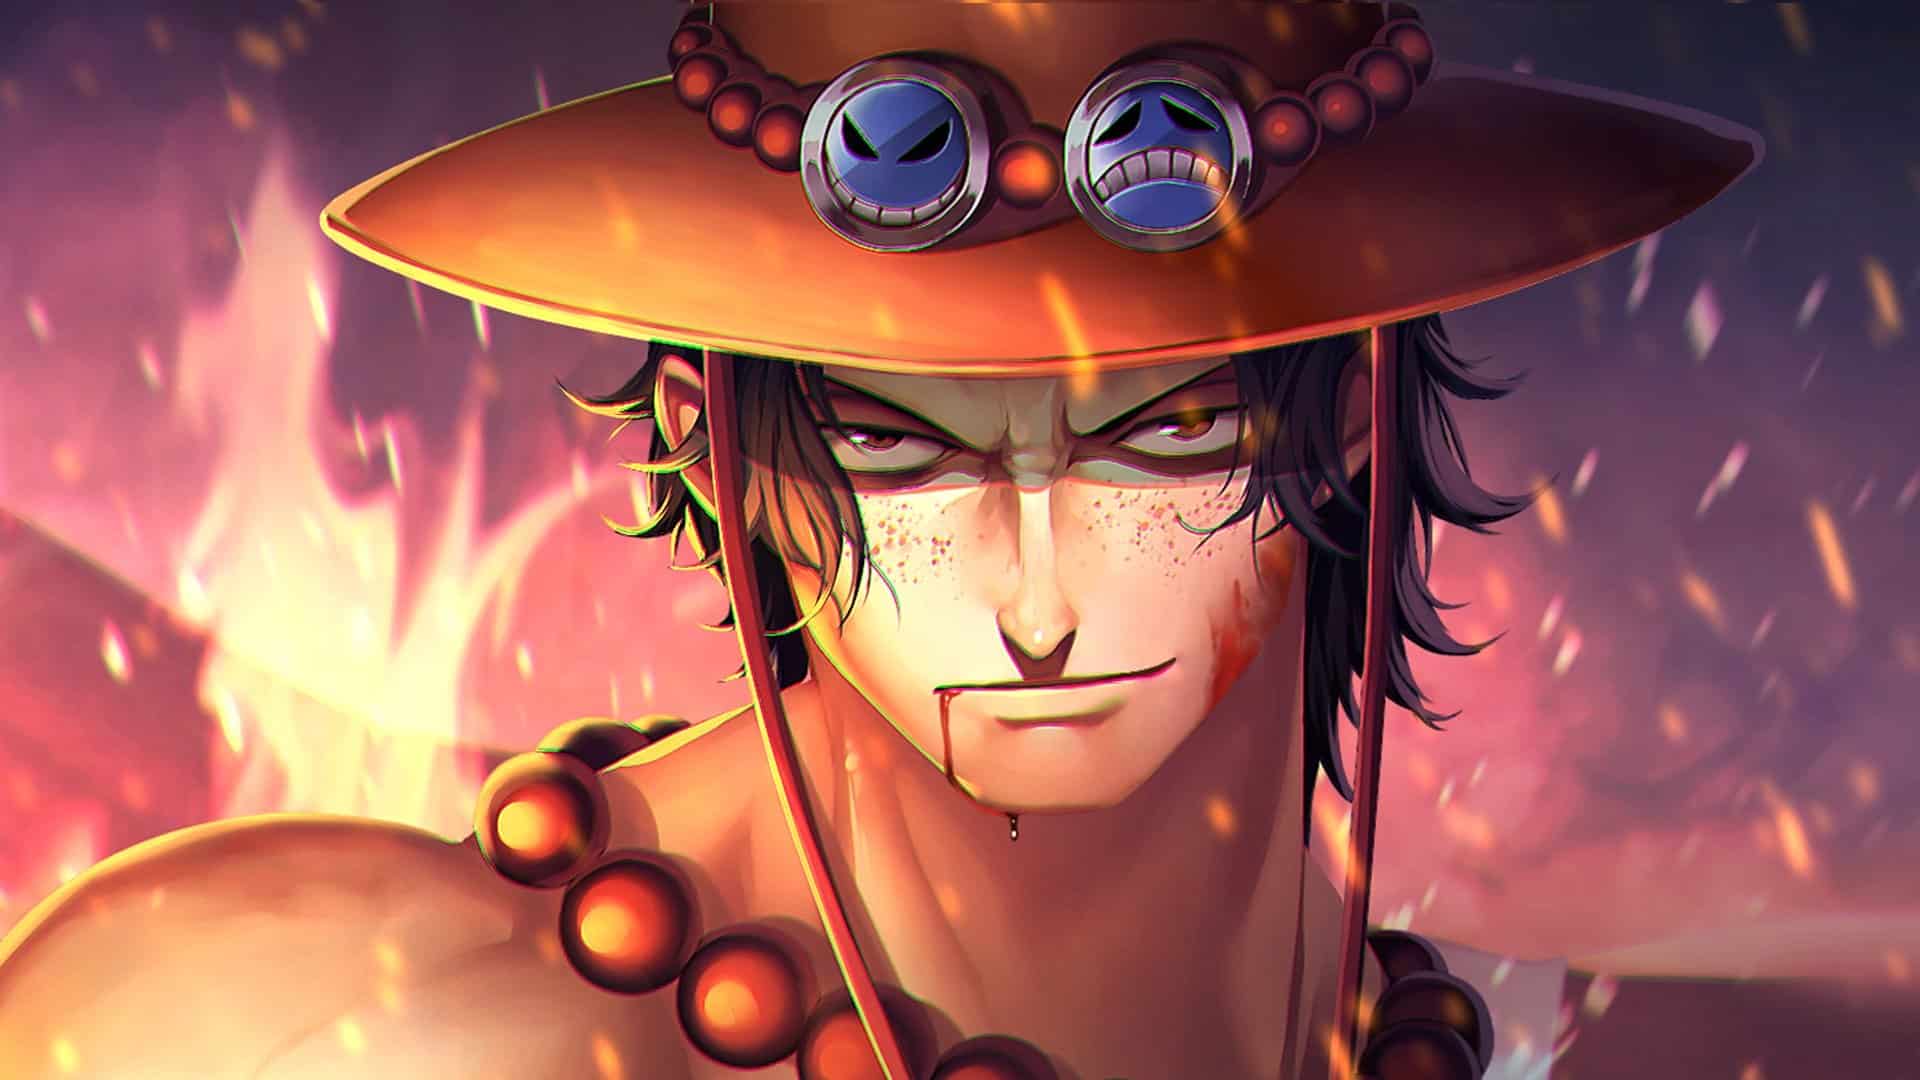 Descubra o que significam os dois rostos no chapéu do Ace de One Piece